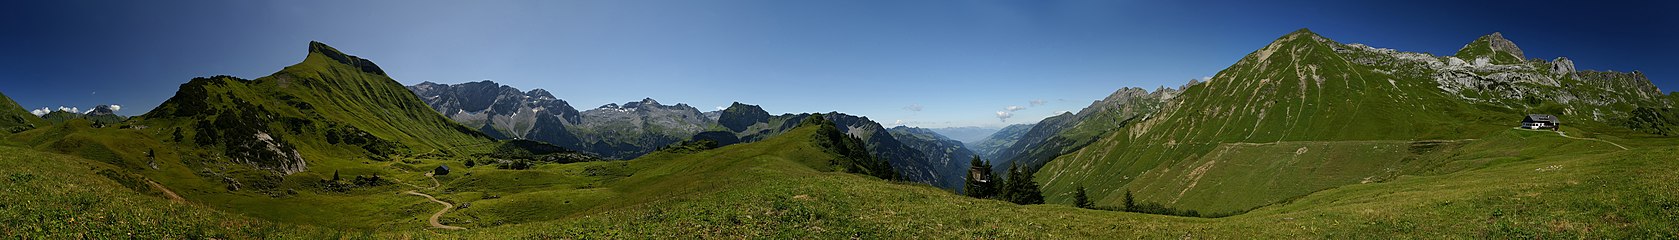 360° Schadonapaß in Austria